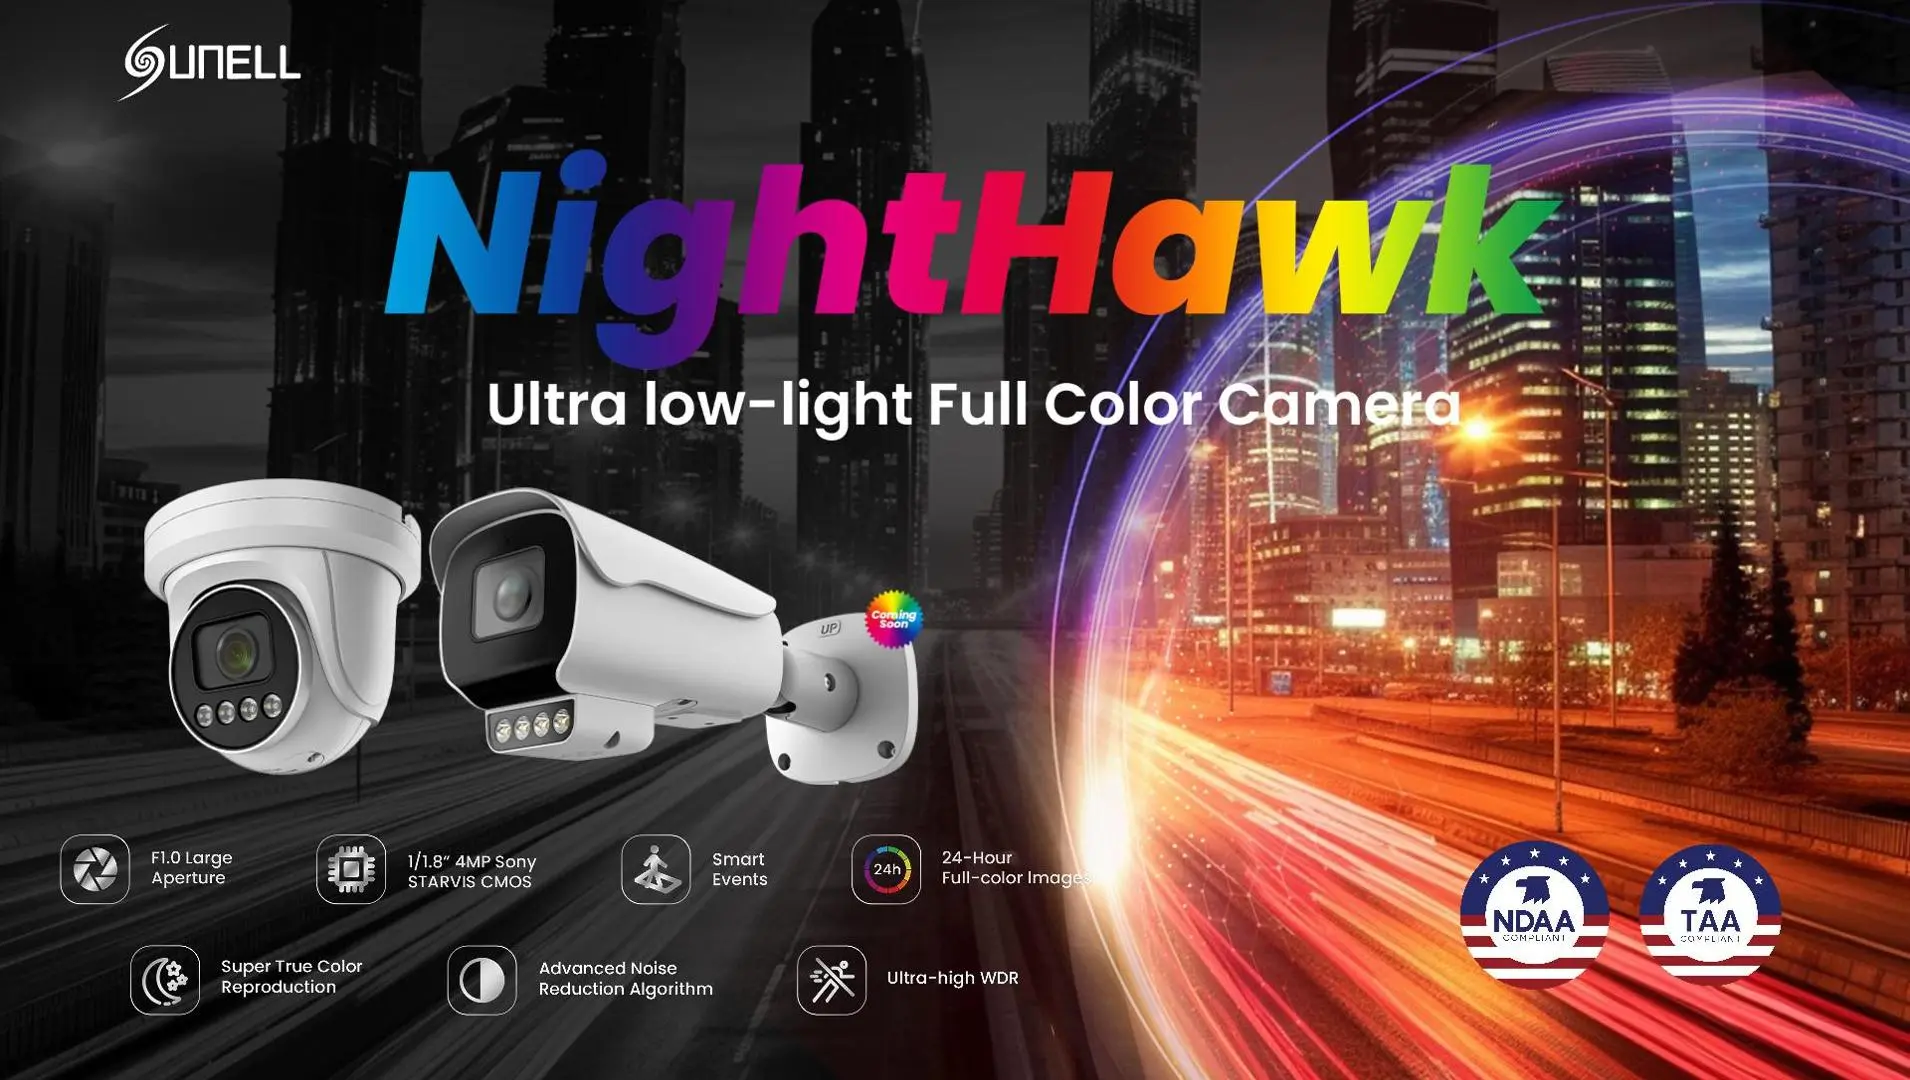 Sunell Nighthawk Ultra-low-light Intelligent Full-color Camera - 翻译中...